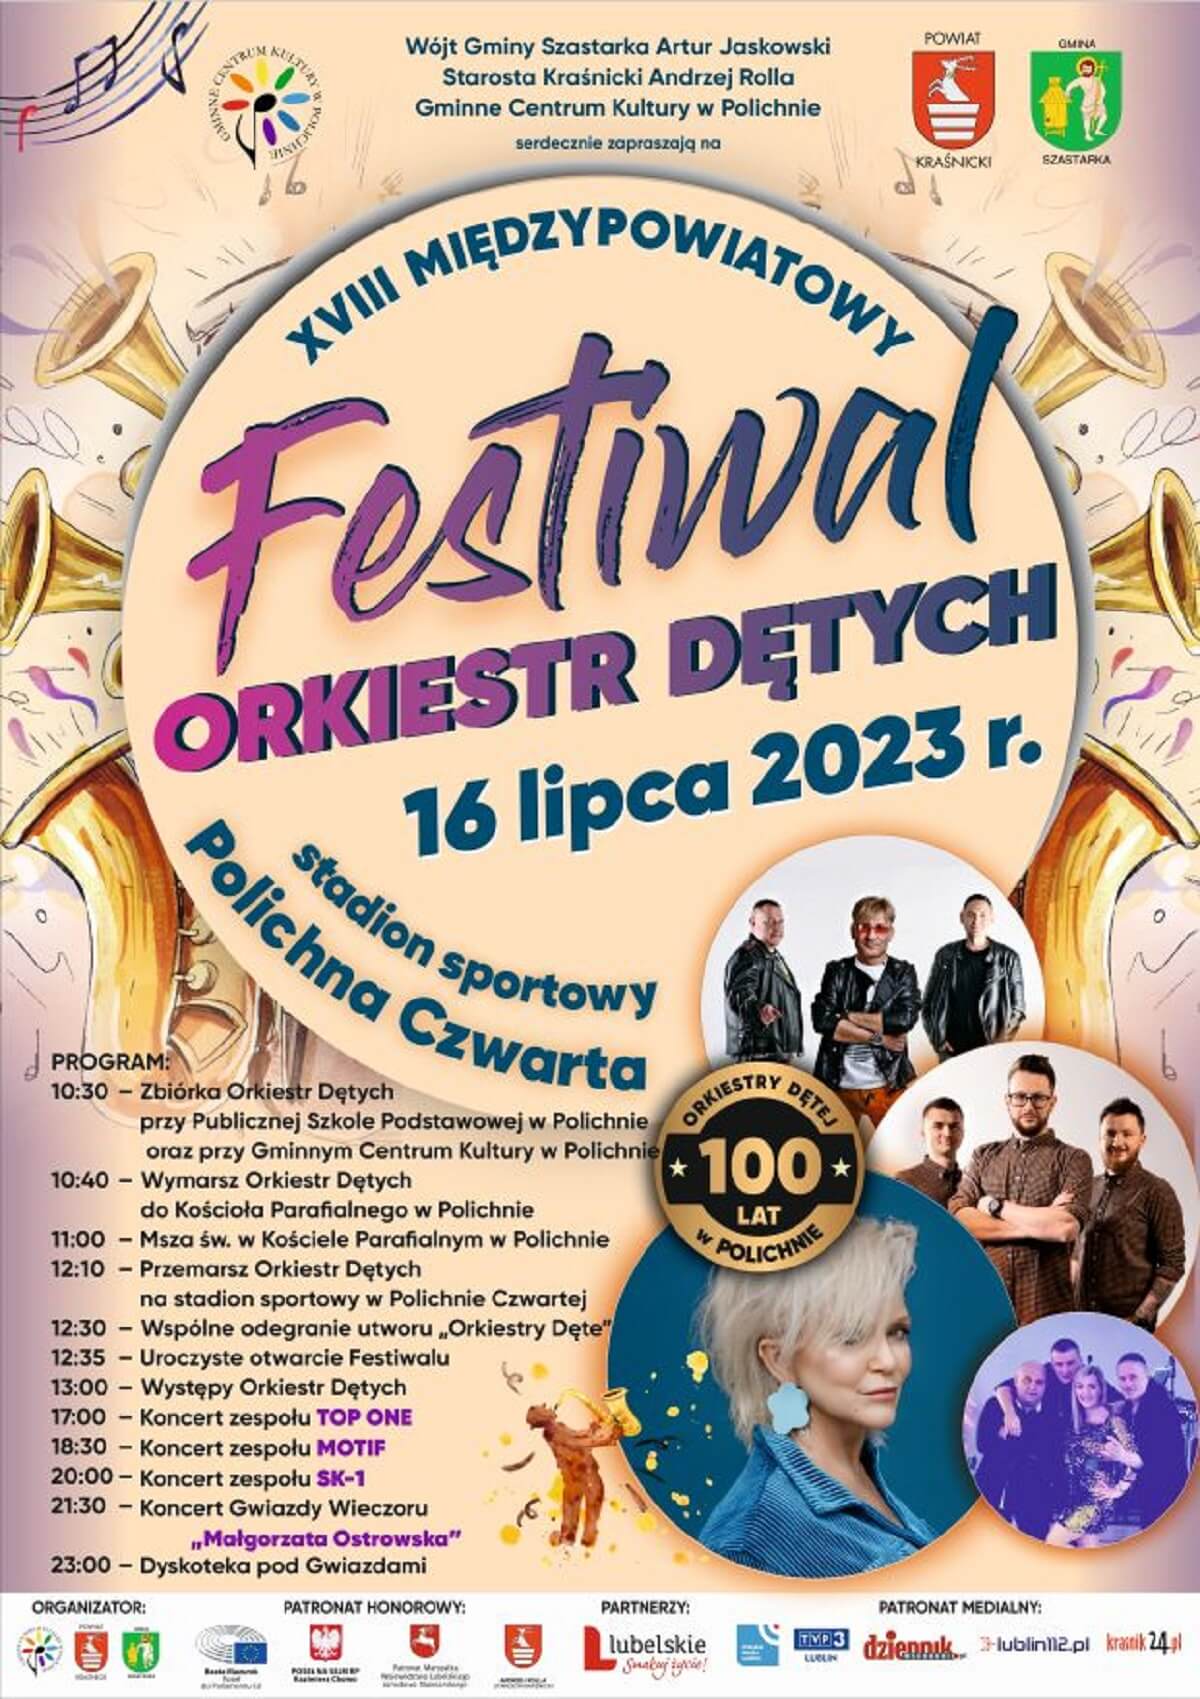 Festiwal Orkiestr Dętych w Polichnie 2023 - program, plakat